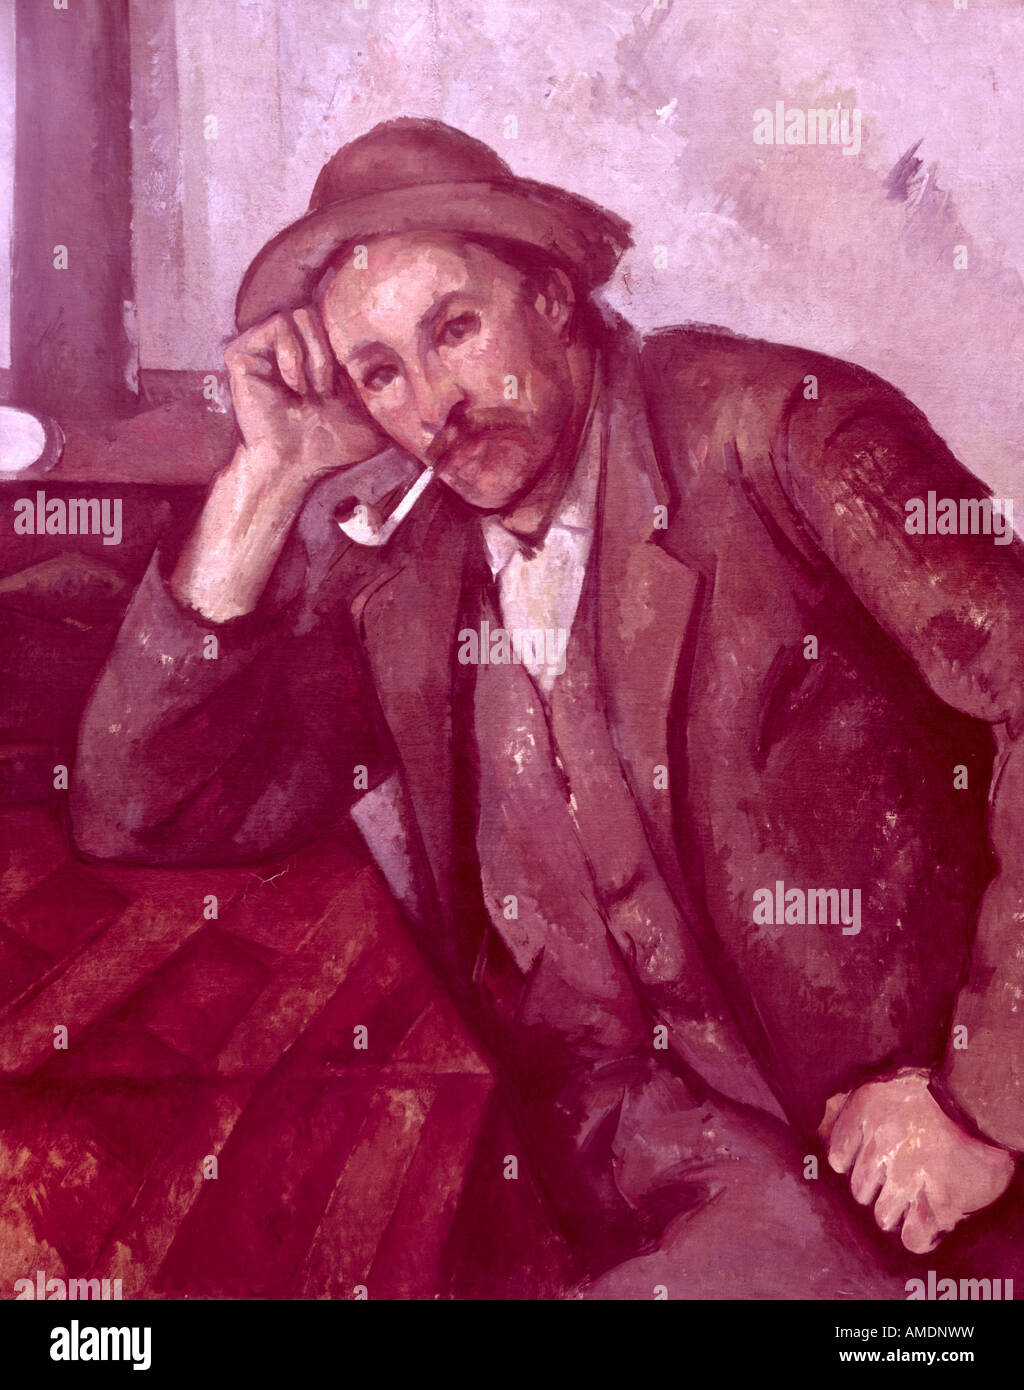 Belle arti, Cézanne, Paul (1839 - 1906), pittura, 'il fumatore", 1890, olio su tela, 92,5 cm x 73,5 cm, comunale arts gallery, Mannheim, , artista del diritto d'autore non deve essere cancellata Foto Stock